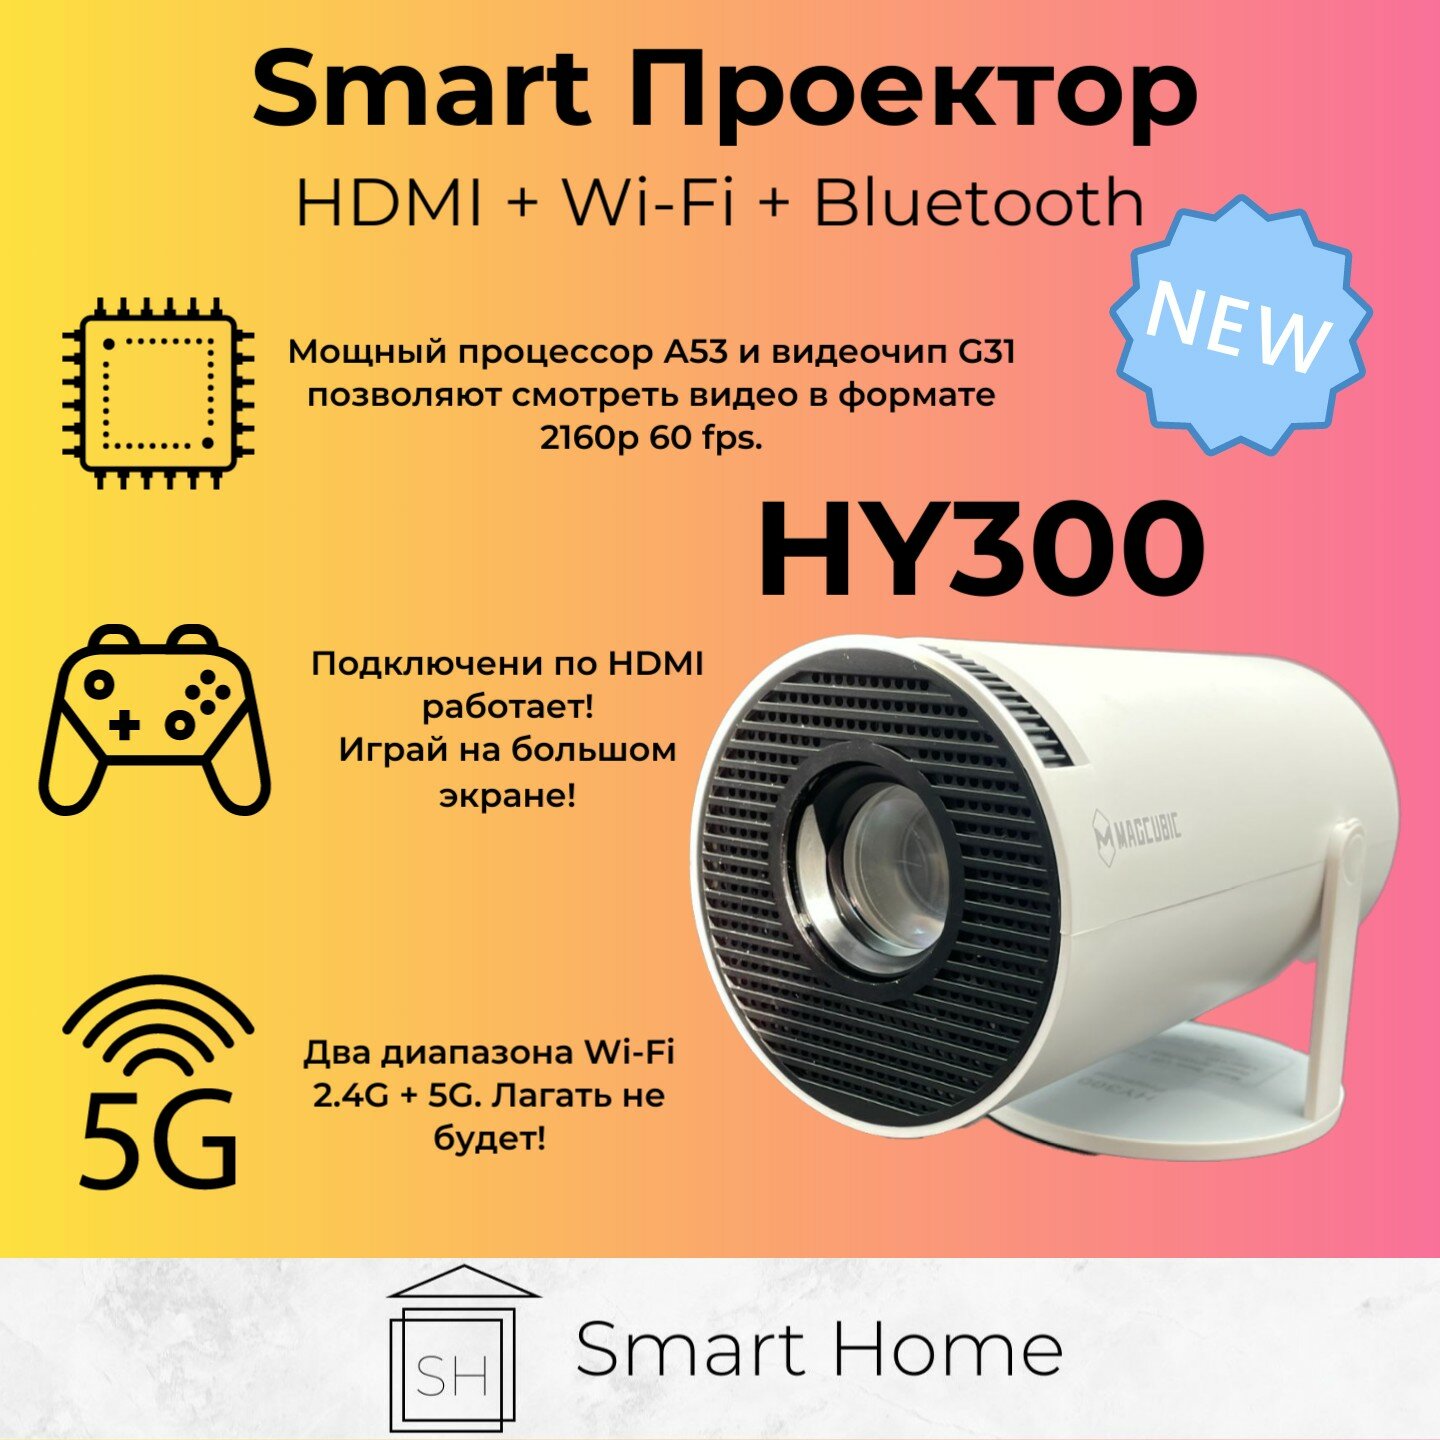 Smart проектор HY300 (HDMI Wi-Fi 5G Bluetooth) ++ бесплатные кинотеатры 2160p 60fps, белый для дома, дачи и офиса